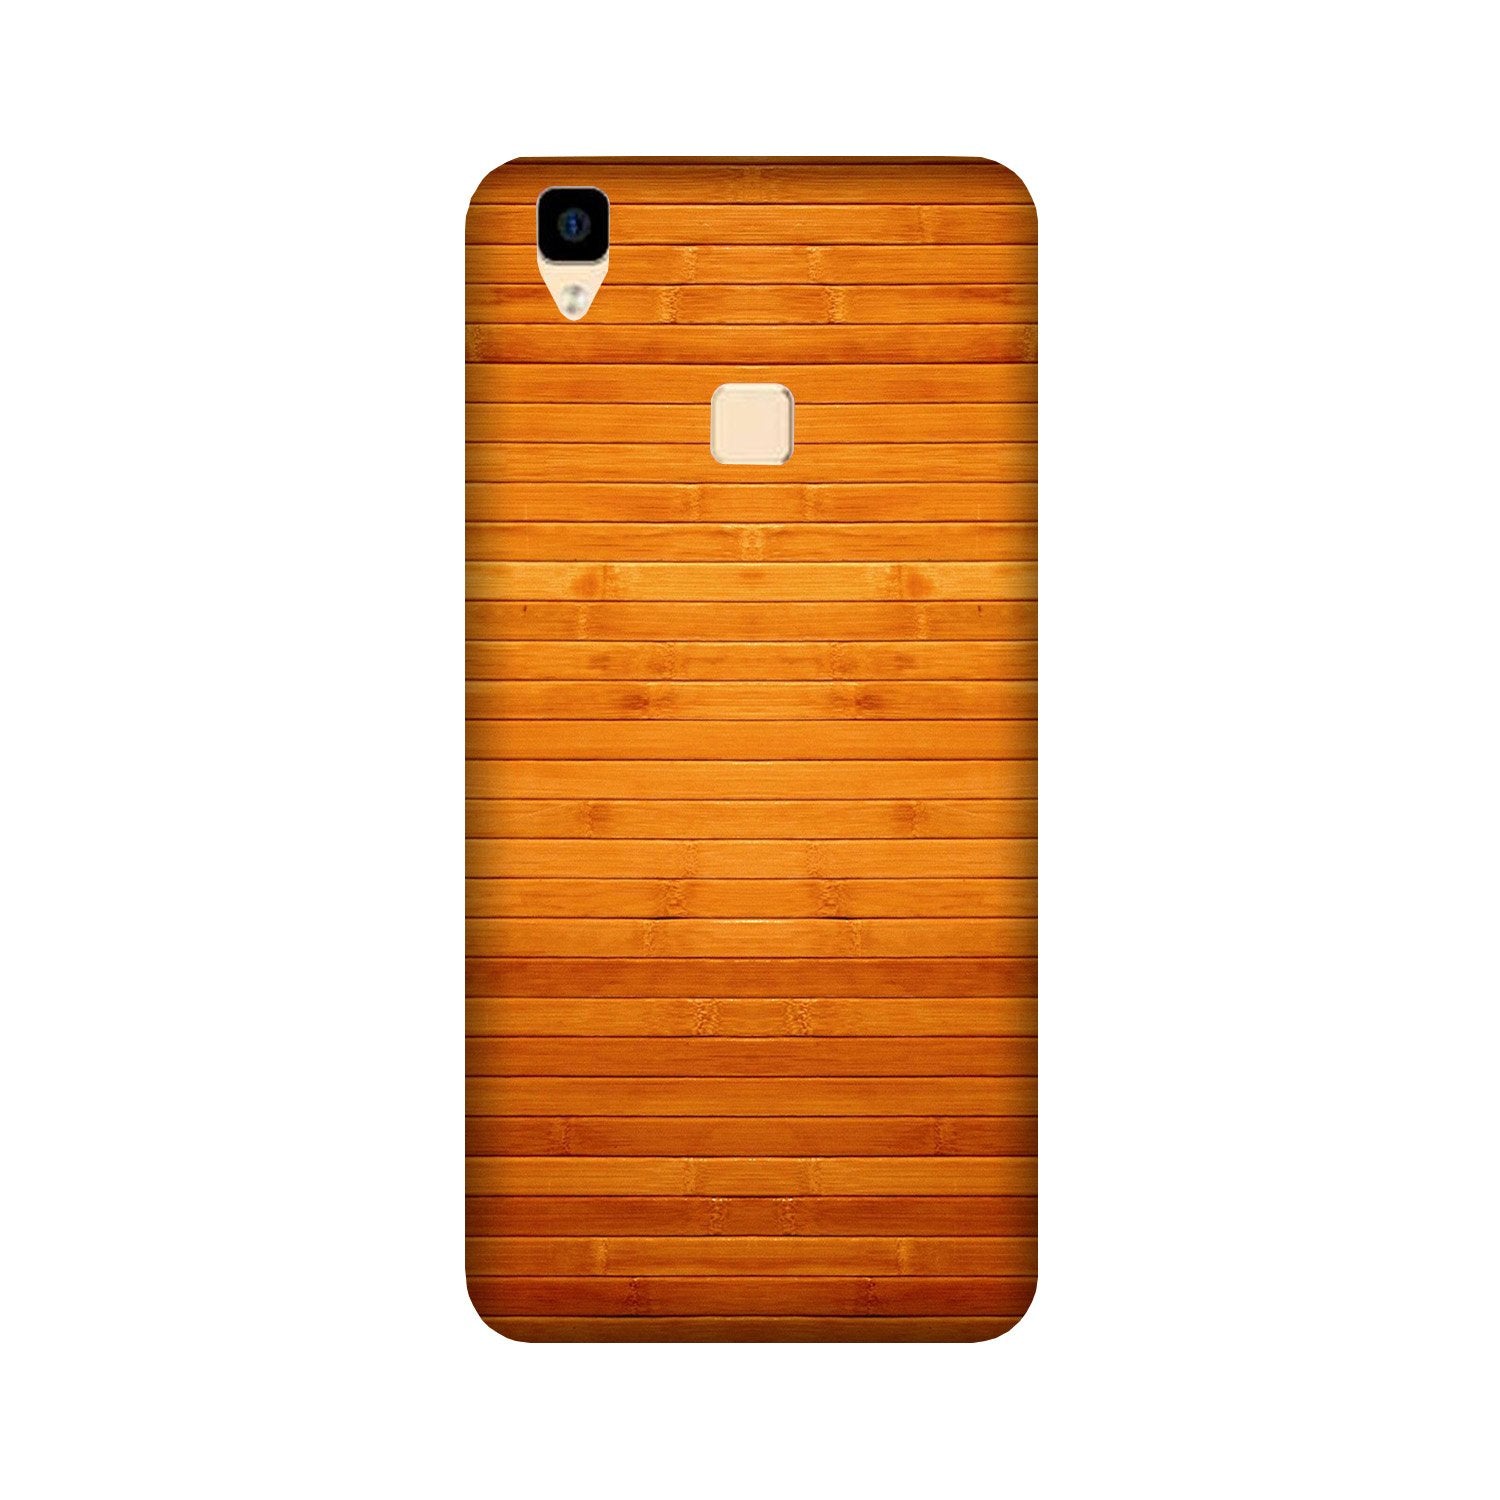 Wooden Look Case for Vivo V3 Max(Design - 111)